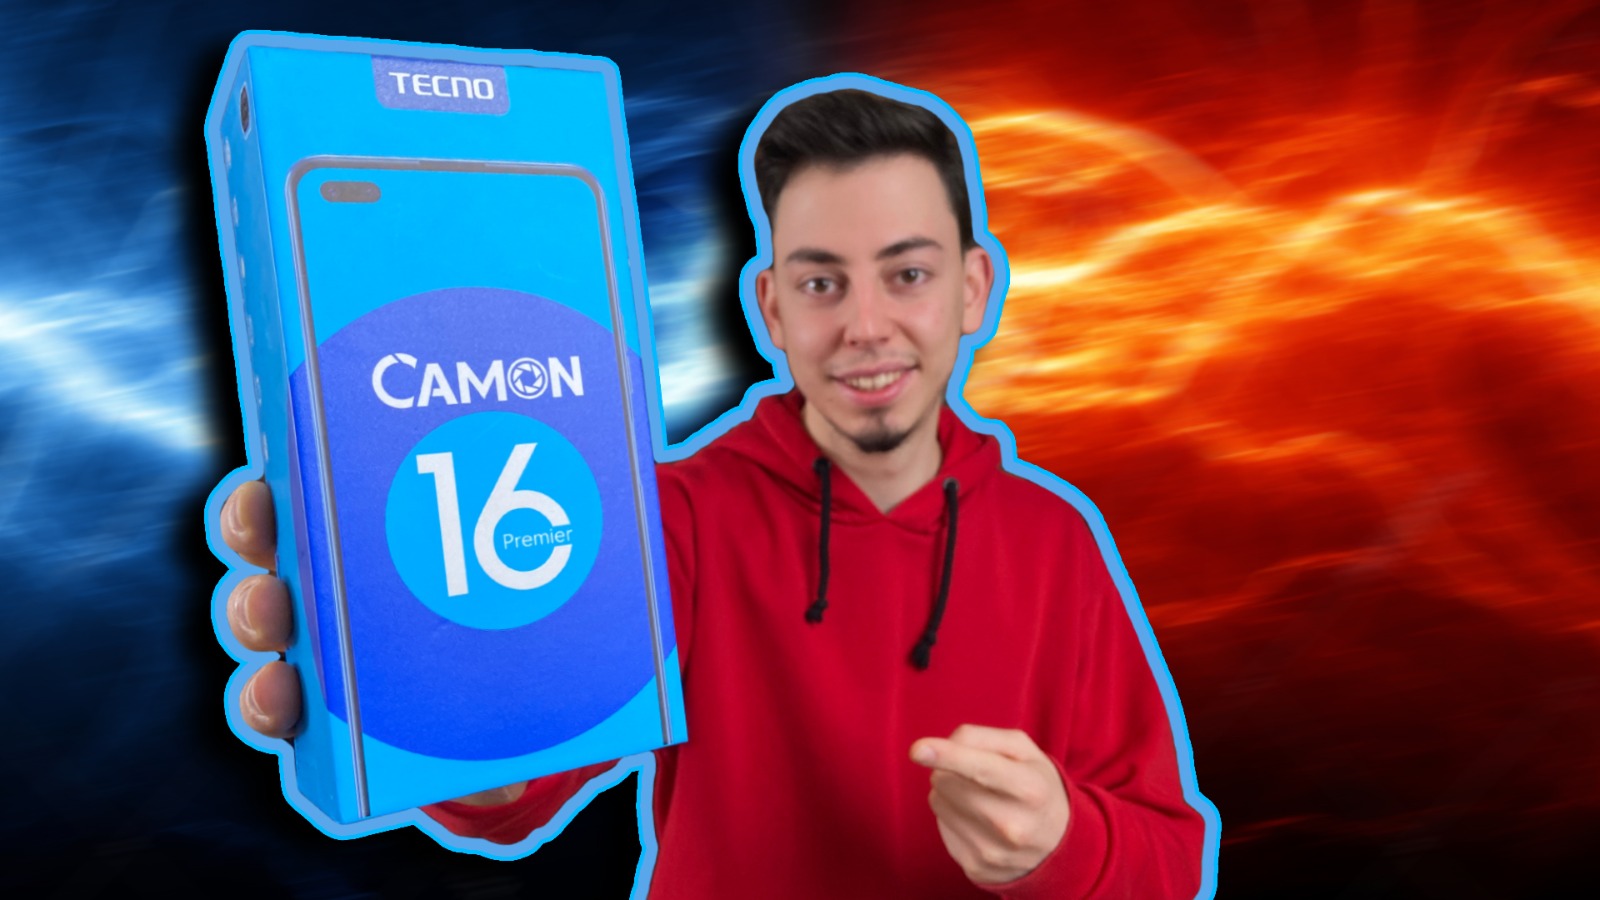 Tecno Camon 16 Premier ile 1 gün – Telefon hediyeli vLog